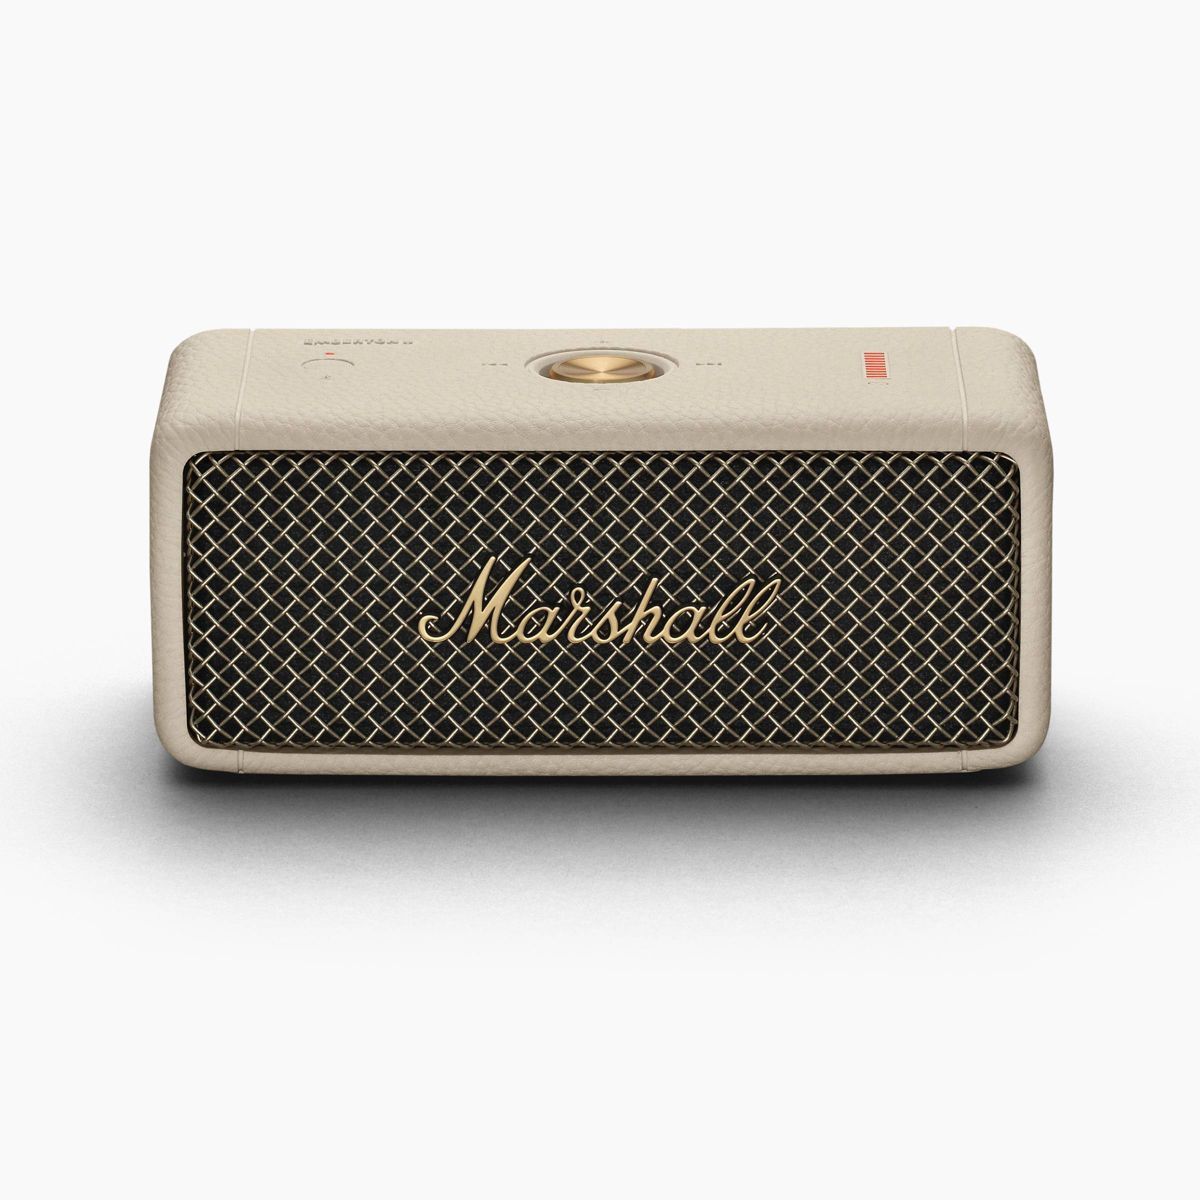 Marshall Emberton II Portable Bluetooth Speaker - Cream | Target